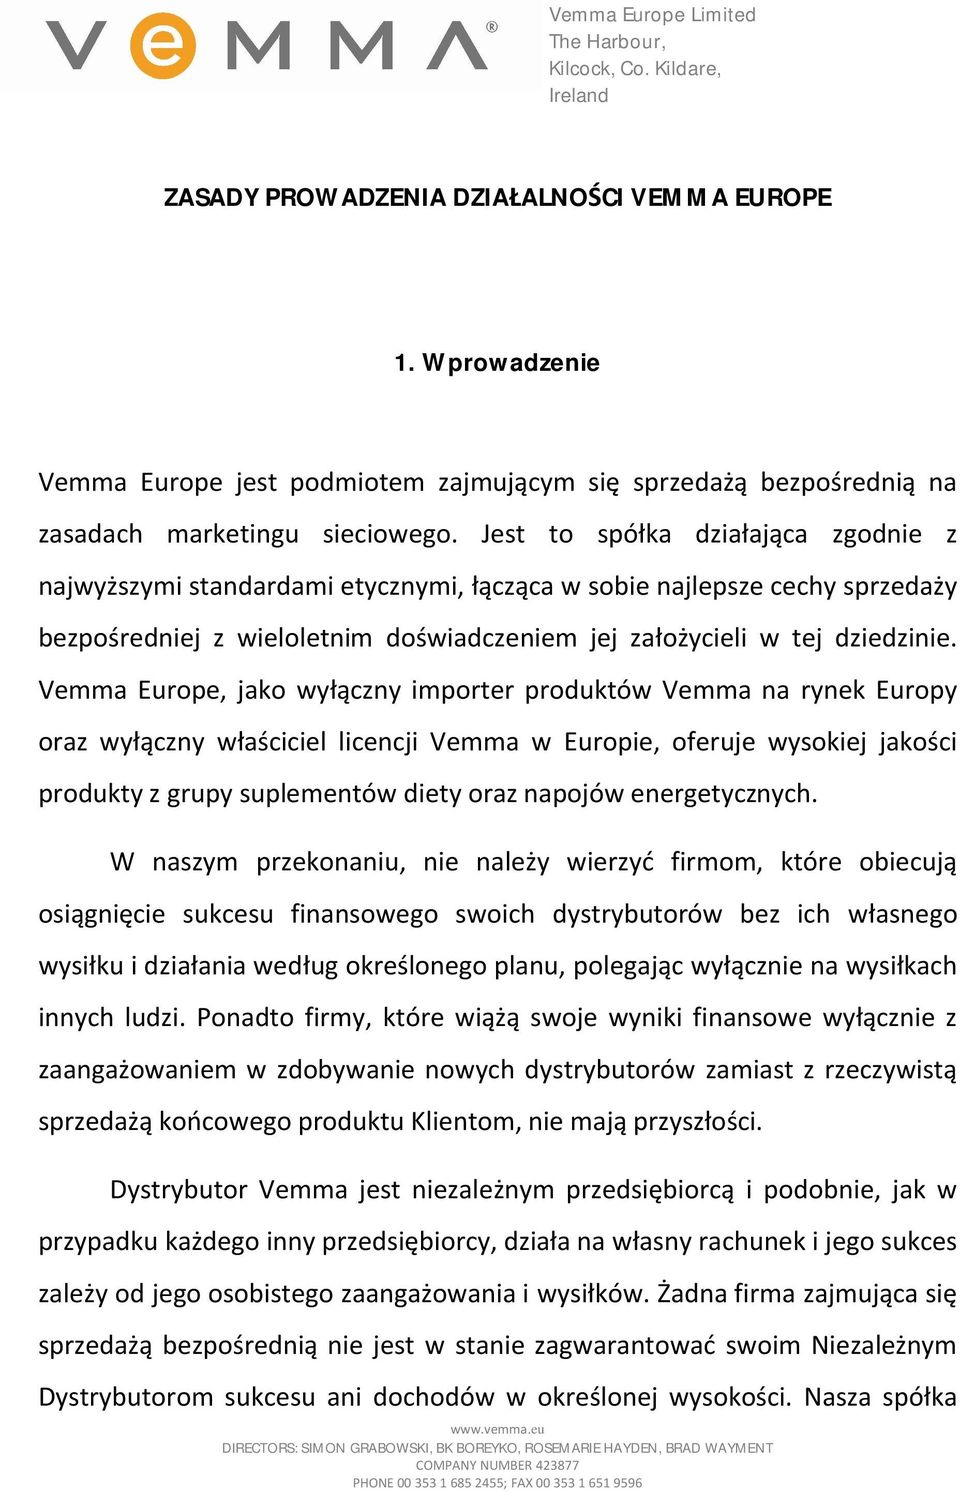 Vemma Europe, jako wyłączny importer produktów Vemma na rynek Europy oraz wyłączny właściciel licencji Vemma w Europie, oferuje wysokiej jakości produkty z grupy suplementów diety oraz napojów